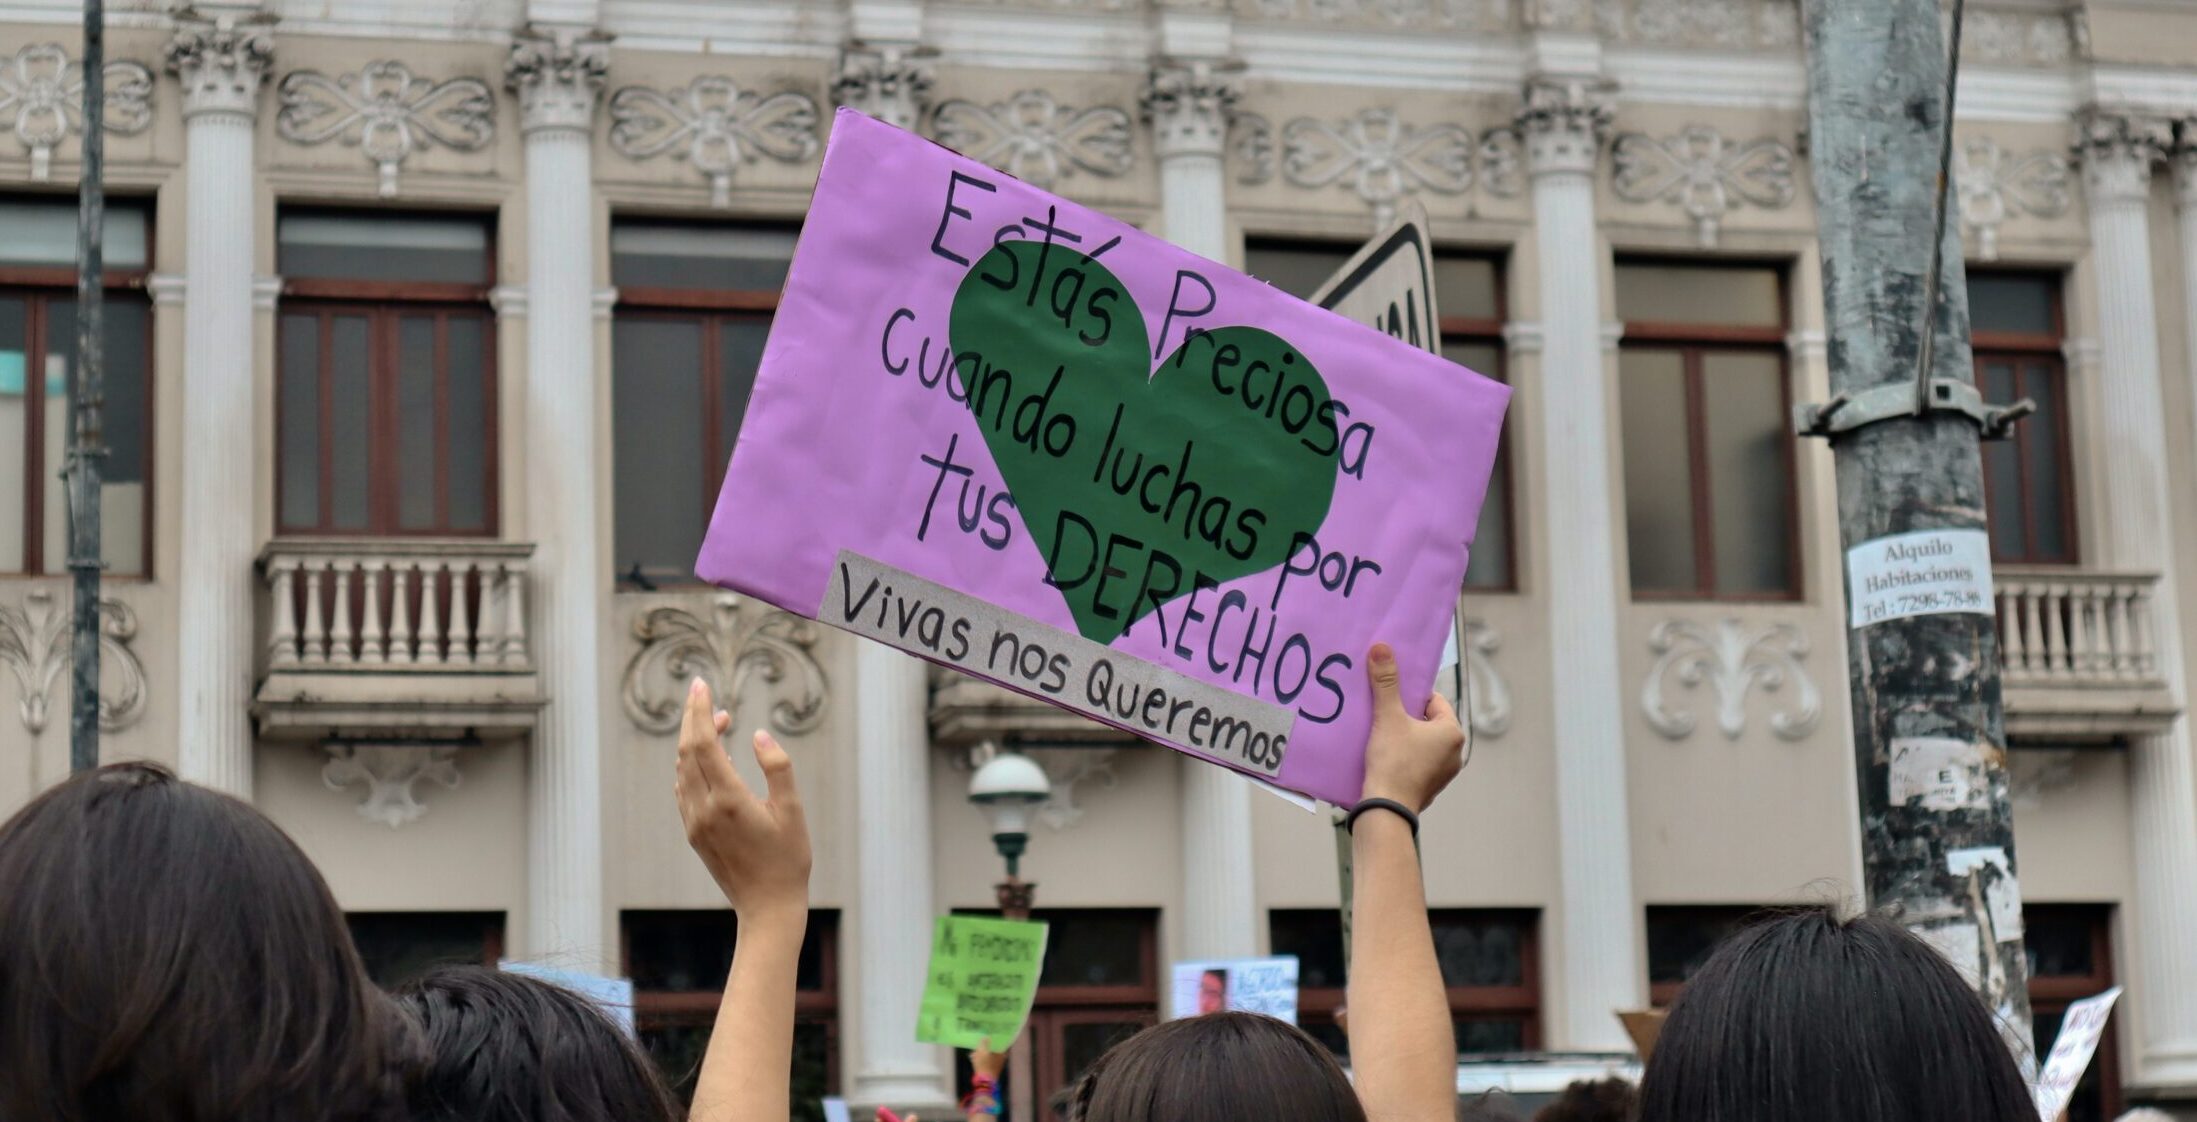 Image of a park with a woman holding a sign, states "Estás Preciosa. Vivas nos queremos"